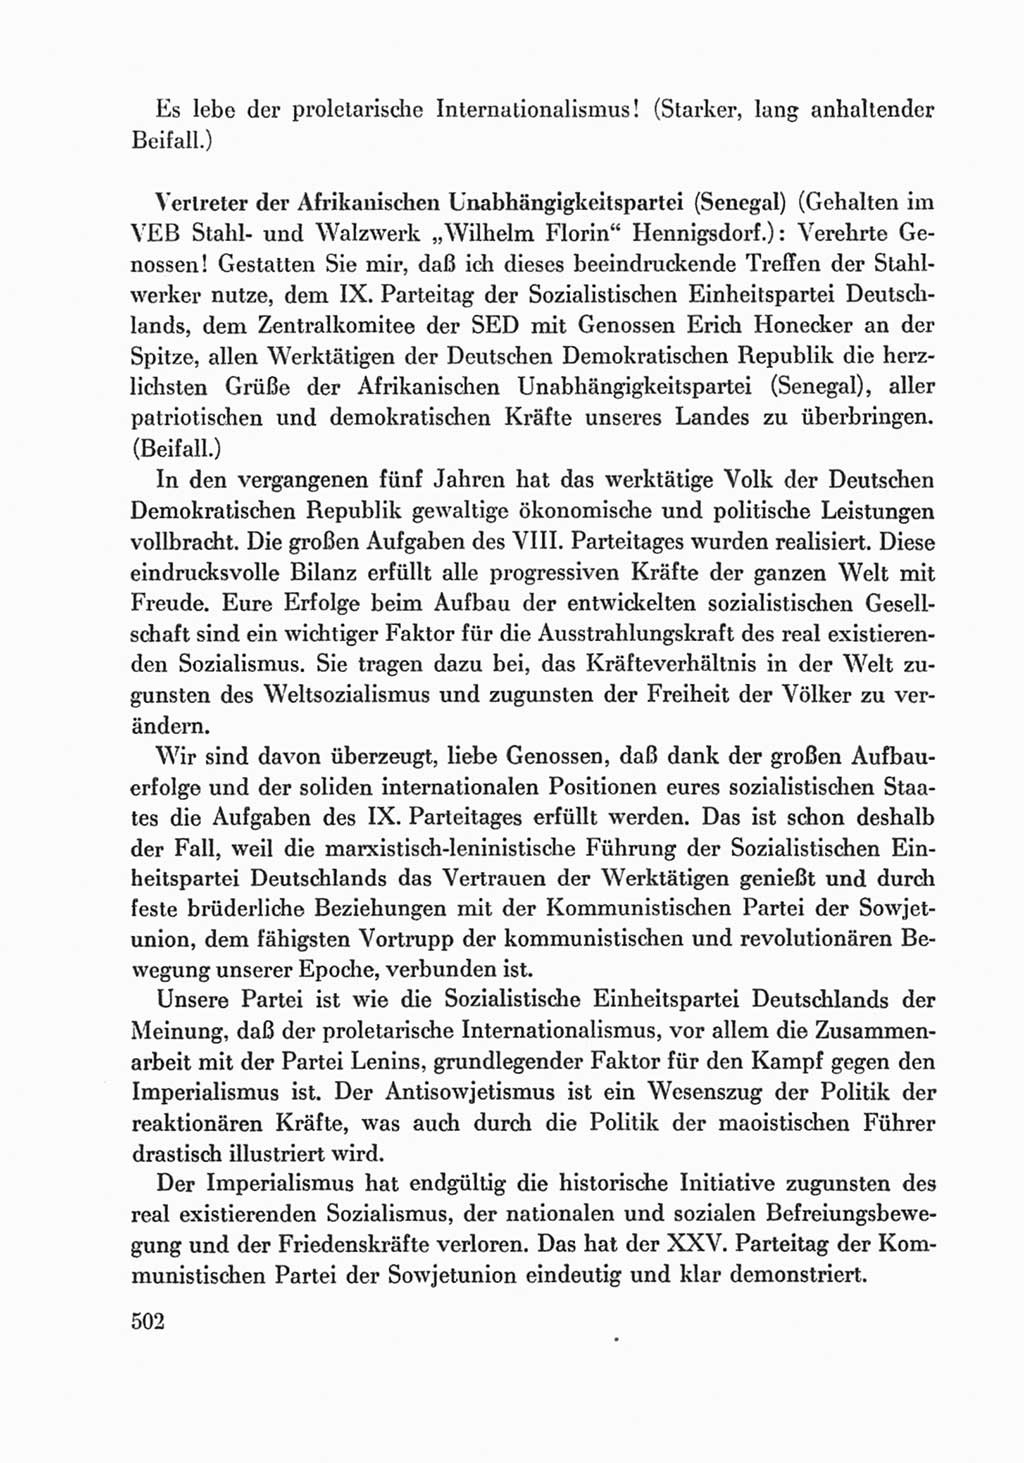 Protokoll der Verhandlungen des Ⅸ. Parteitages der Sozialistischen Einheitspartei Deutschlands (SED) [Deutsche Demokratische Republik (DDR)] 1976, Band 1, Seite 502 (Prot. Verh. Ⅸ. PT SED DDR 1976, Bd. 1, S. 502)